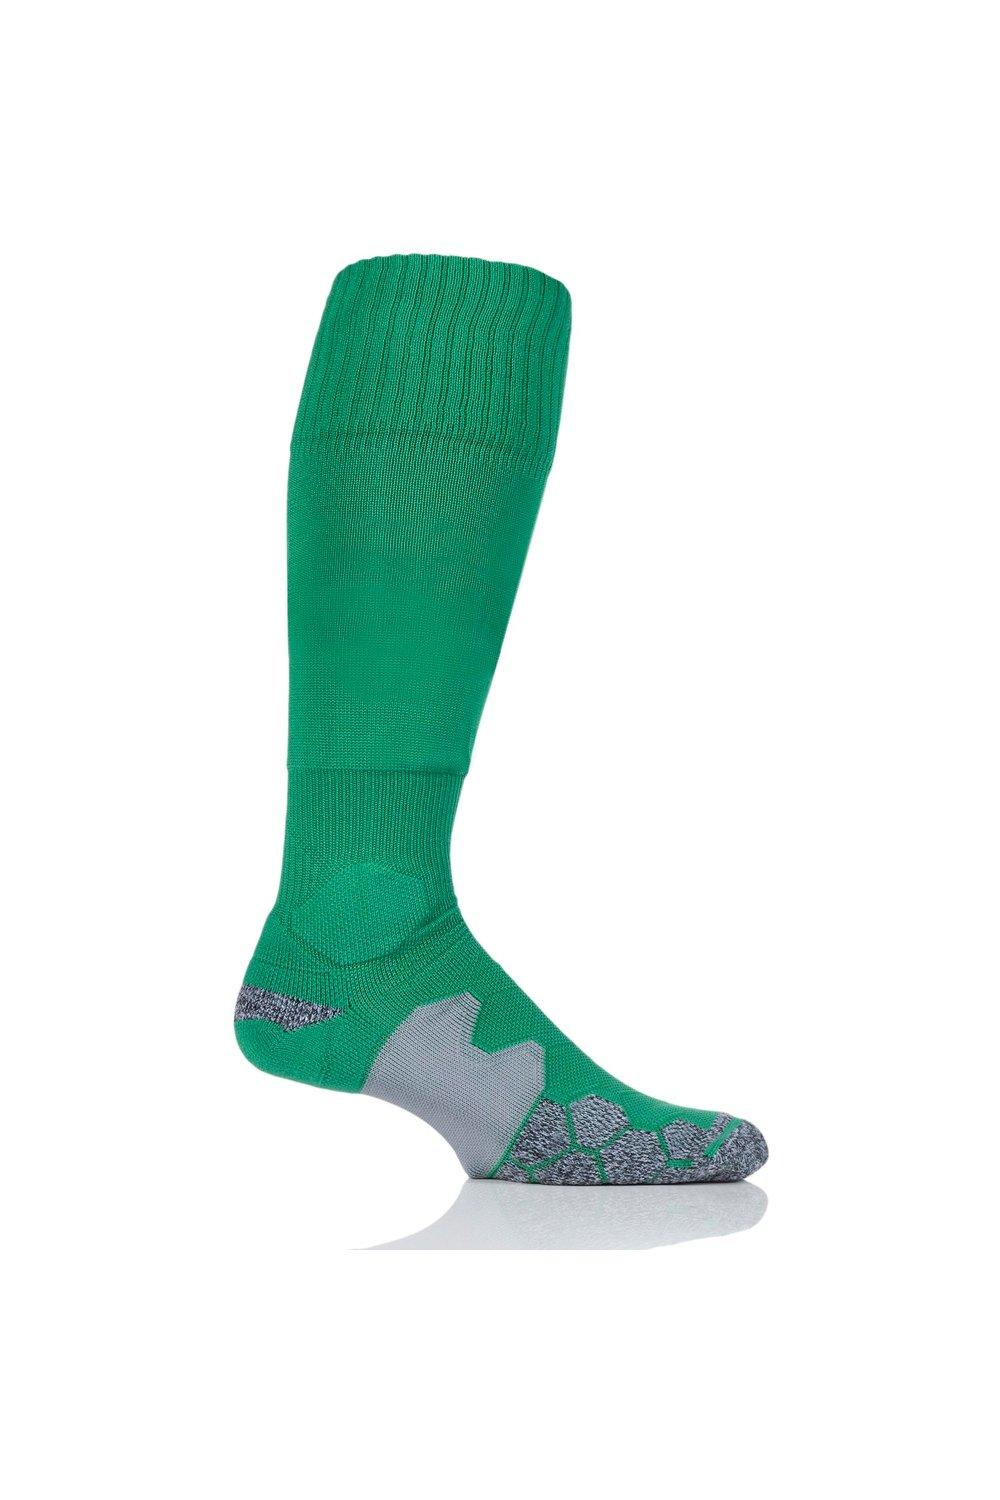 1 пара технических футбольных носков с мягкой подкладкой, произведенных в Великобритании SOCKSHOP of London, зеленый